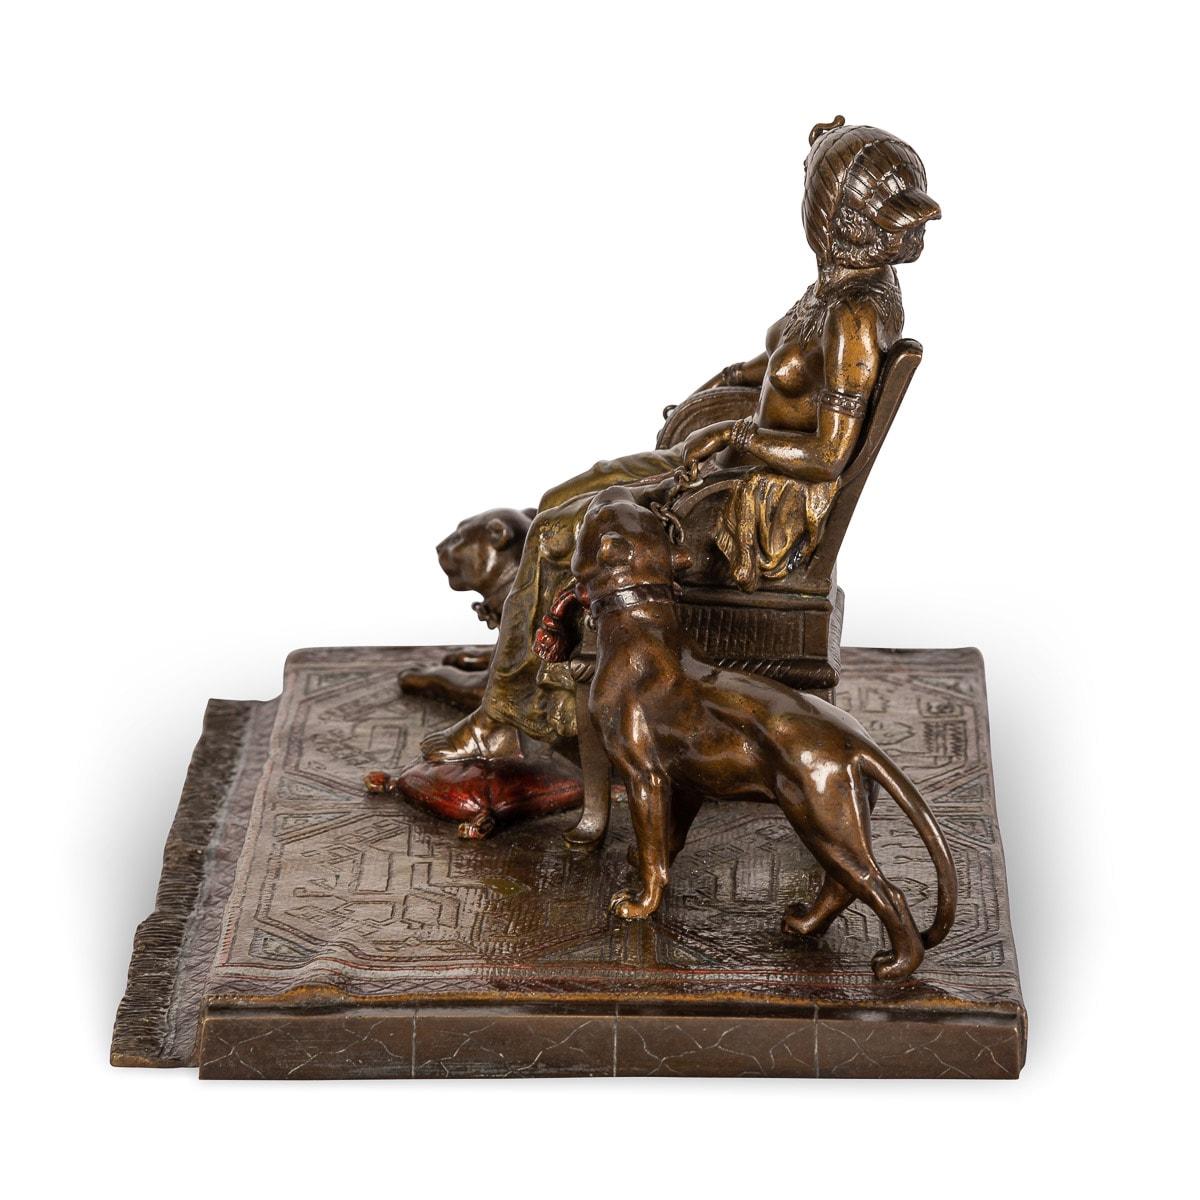 Bronze ancien autrichien du début du 20e siècle, peint à froid, représentant la reine Cléopâtre assise avec deux pumas à ses côtés, sur un tapis au modelé réaliste, drapé sur une base rectangulaire. Réalisé par Franz Xavier Bergman (1861-1936), sans